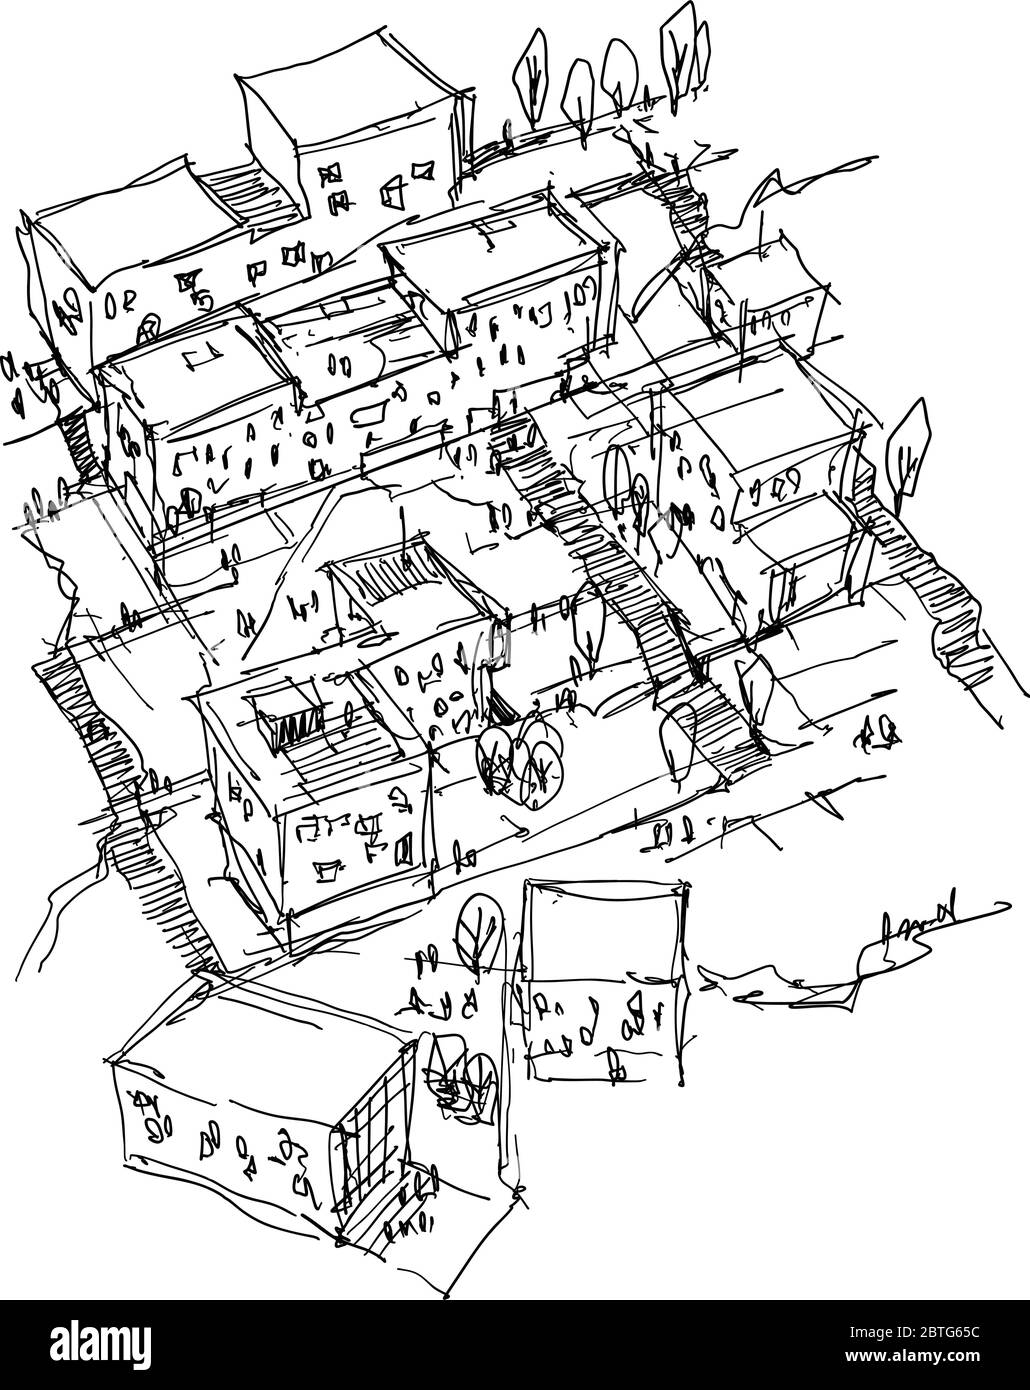 Handgezeichnete architektonische Skizze eines modernen Urbanismus mit Gebäuden und Menschen um Stock Vektor